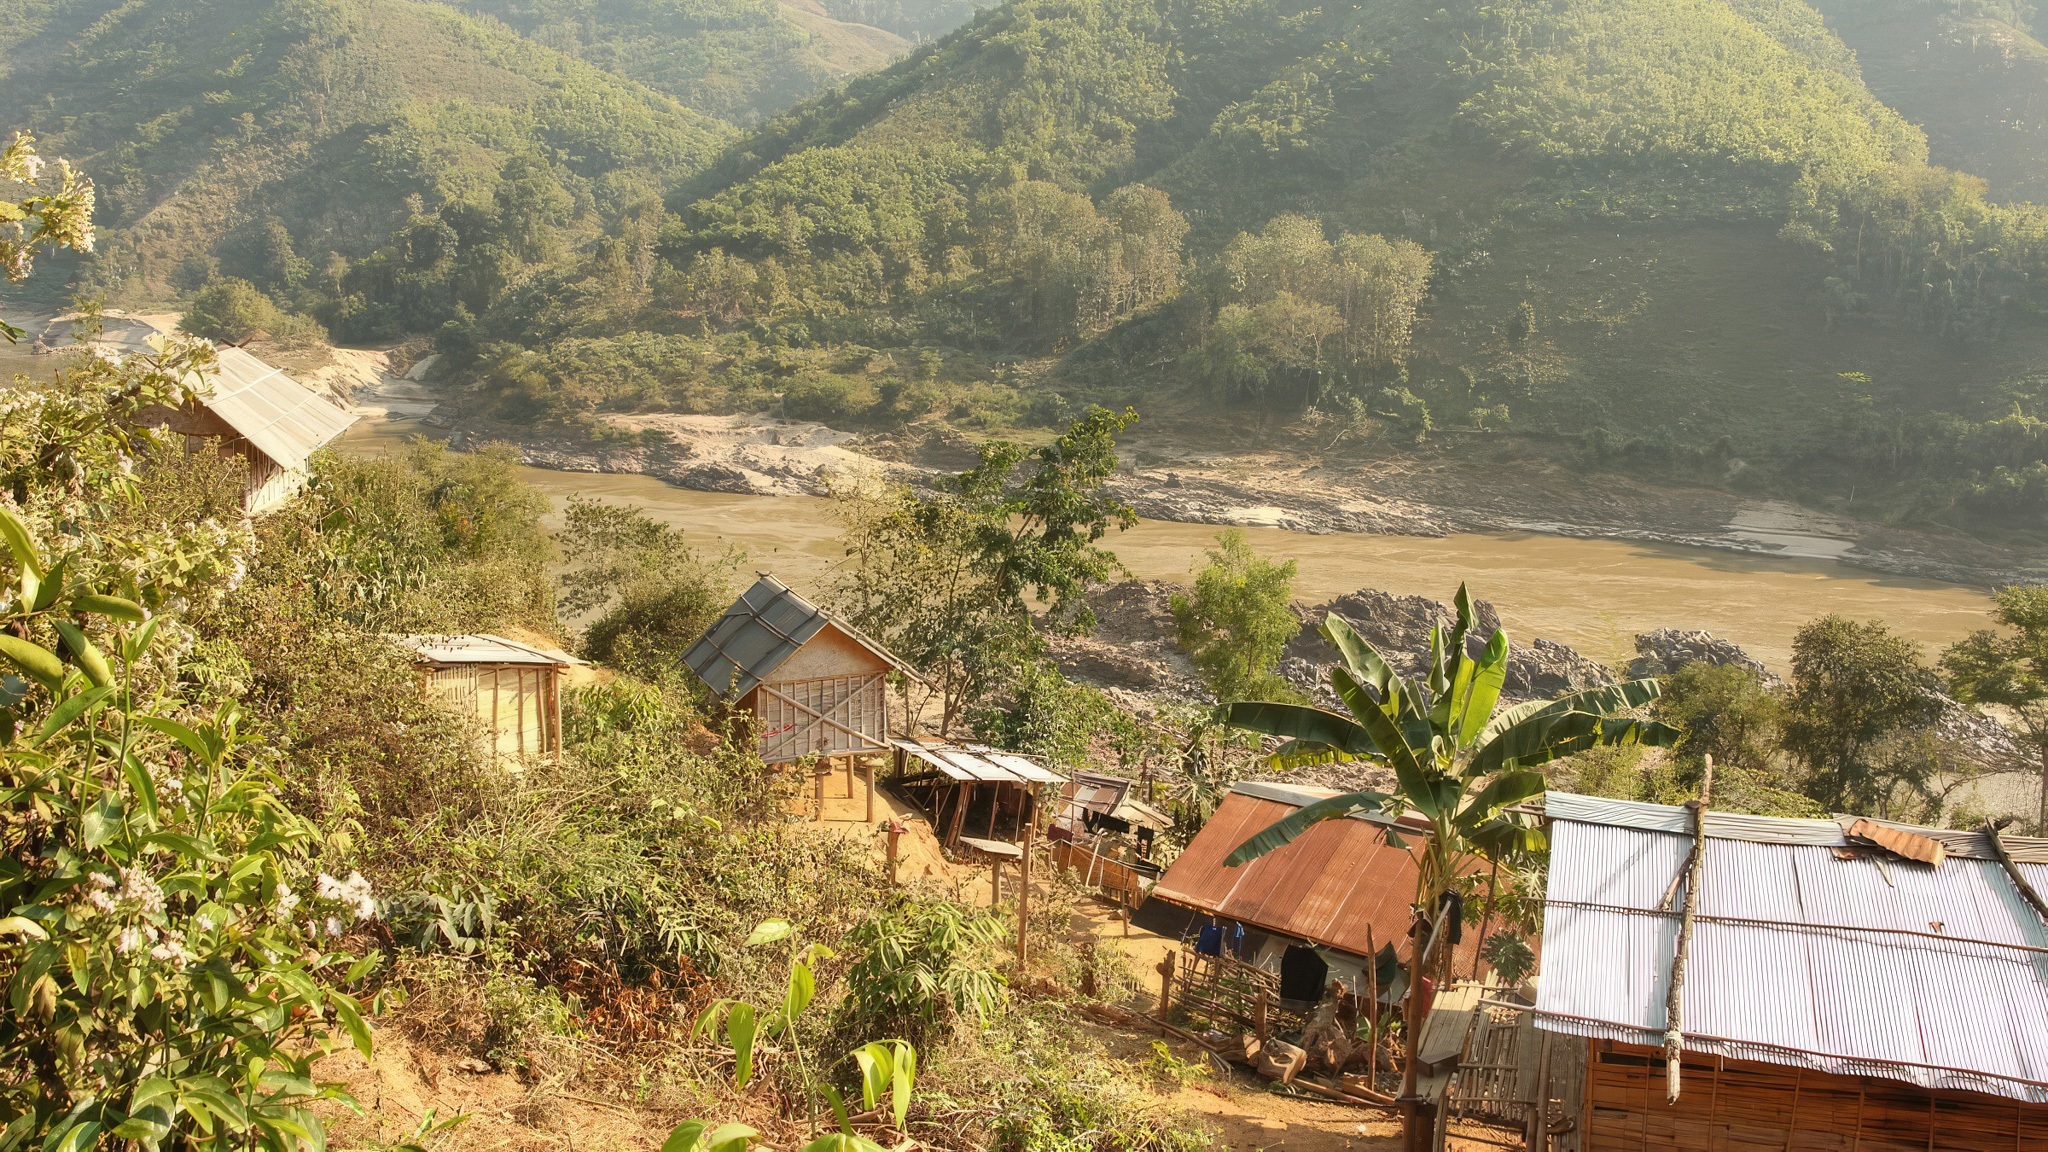 Pristine scenery in Khmou Village